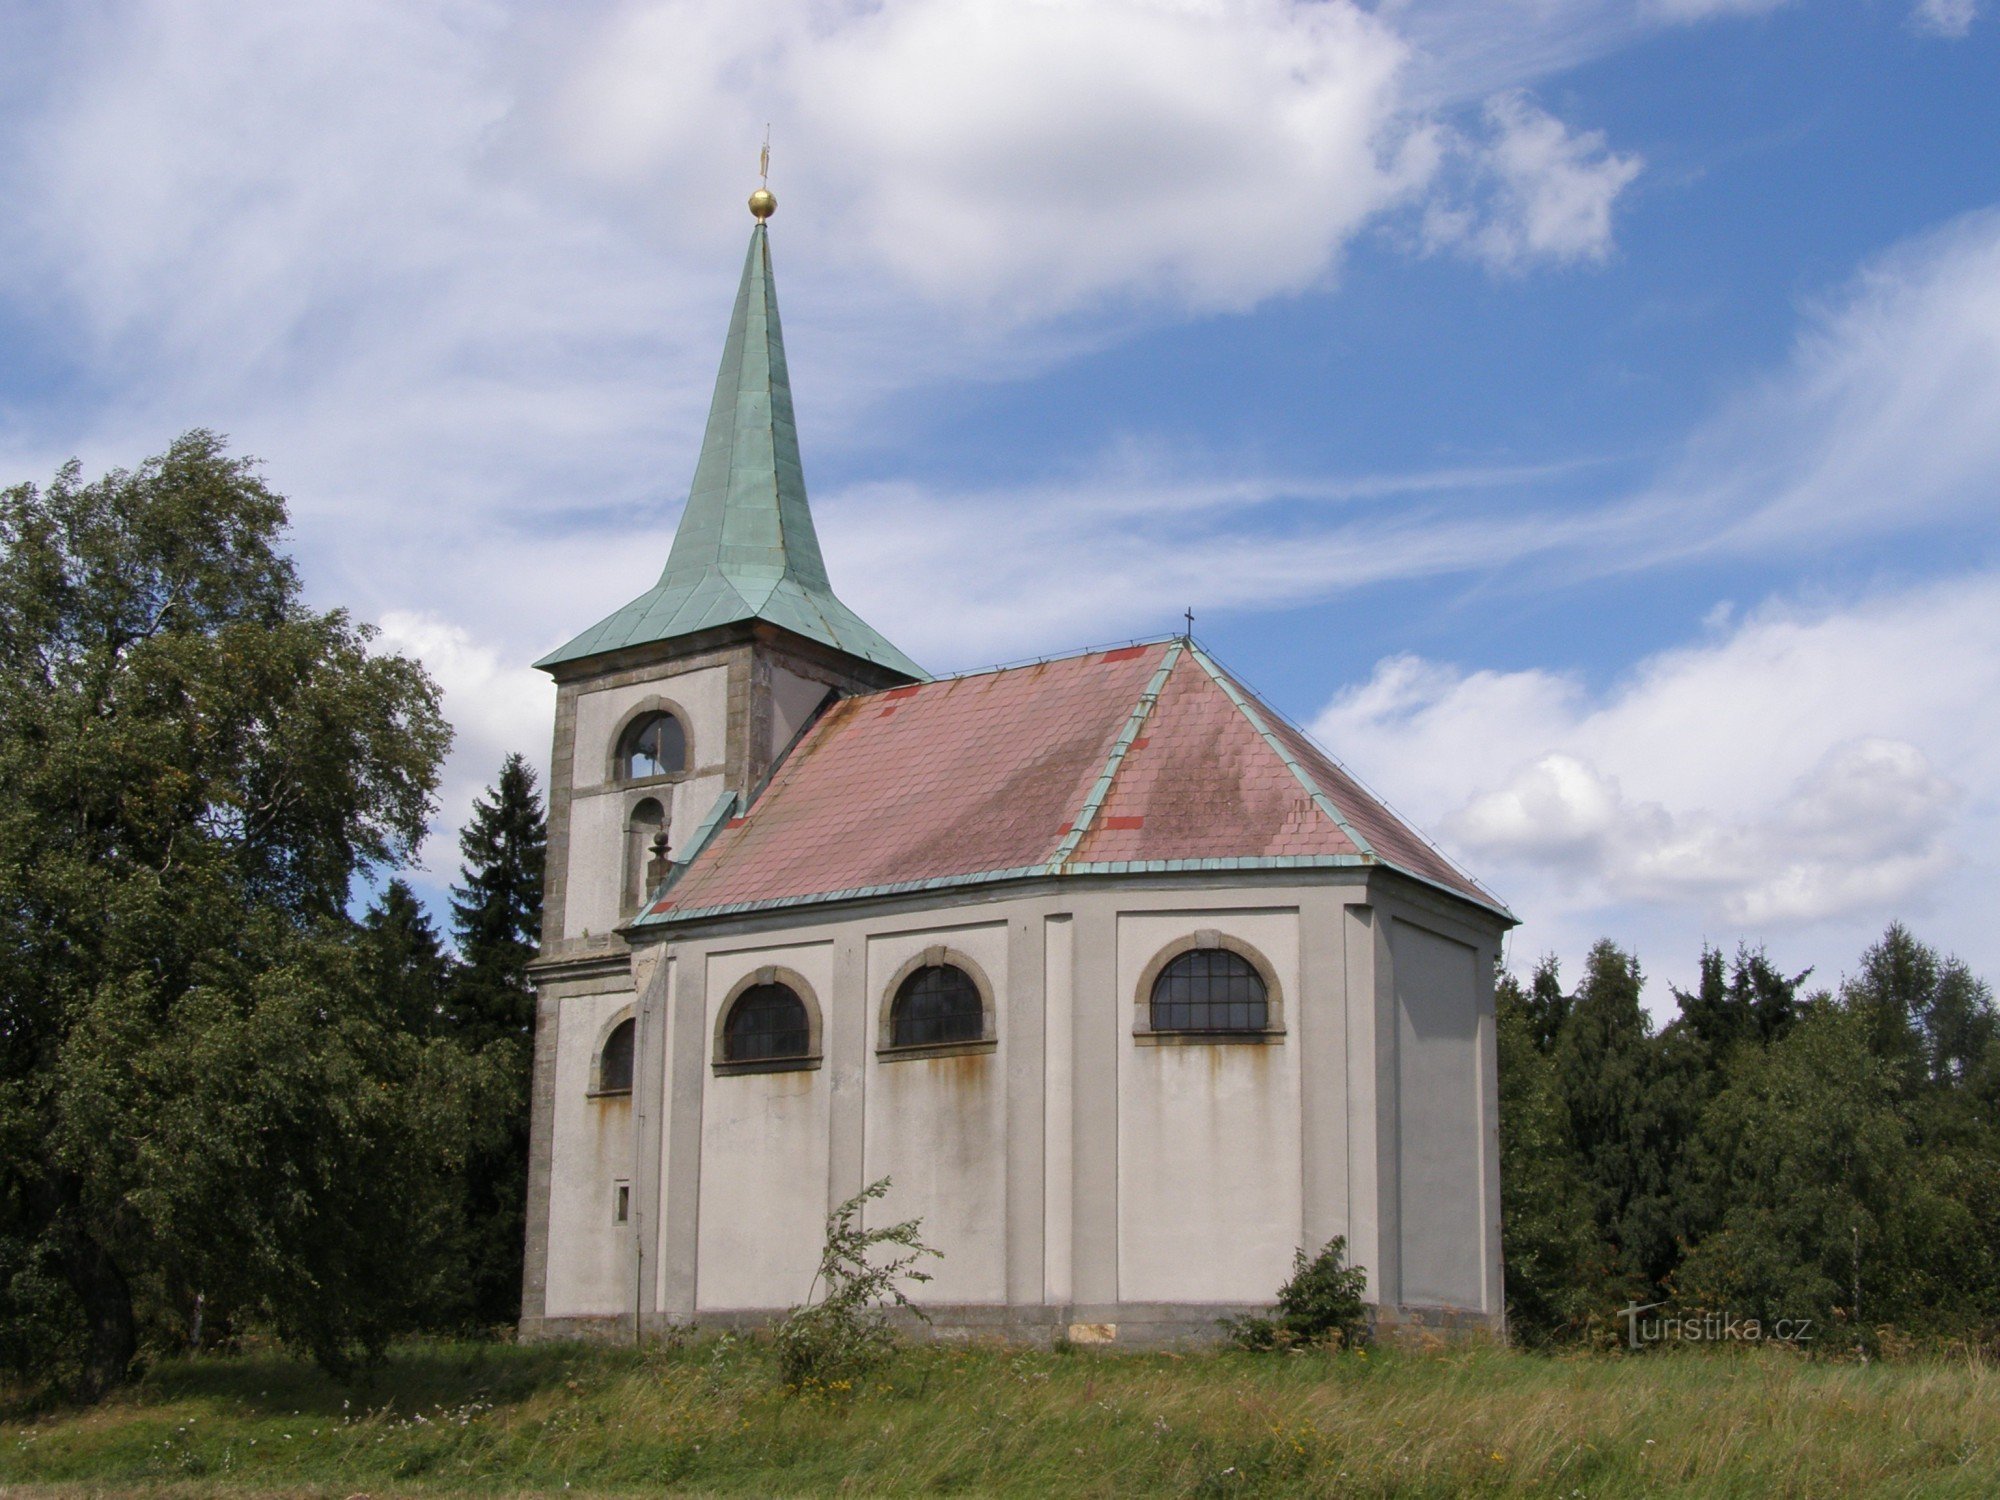 Zvičina - church of St. Jan Nepomucký